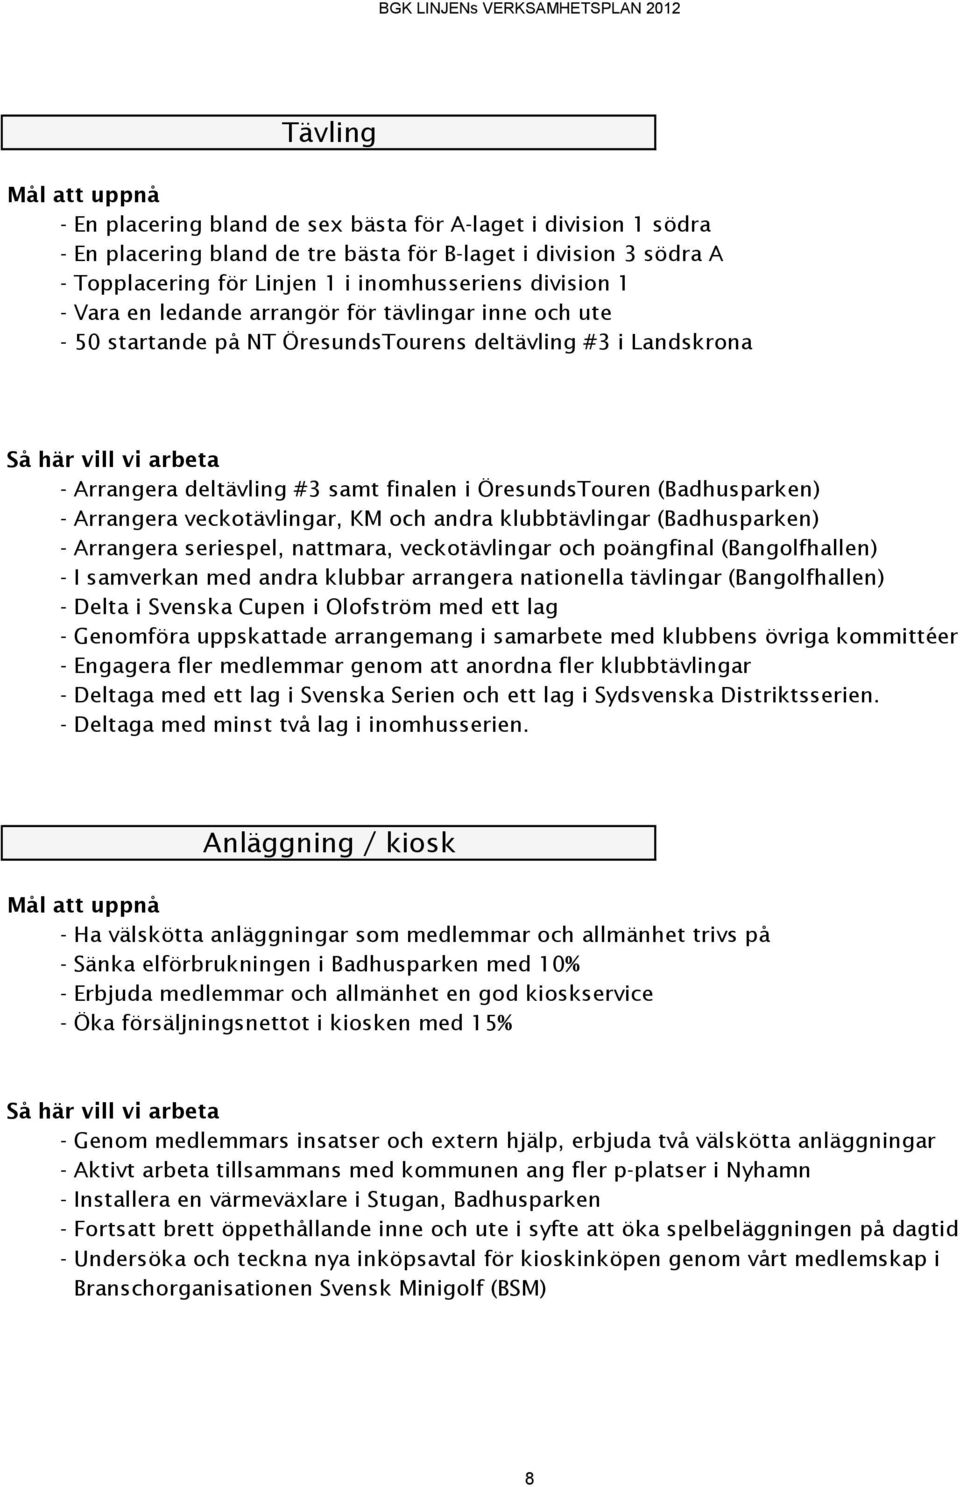 ÖresundsTouren (Badhusparken) - Arrangera veckotävlingar, KM och andra klubbtävlingar (Badhusparken) - Arrangera seriespel, nattmara, veckotävlingar och poängfinal (Bangolfhallen) - I samverkan med